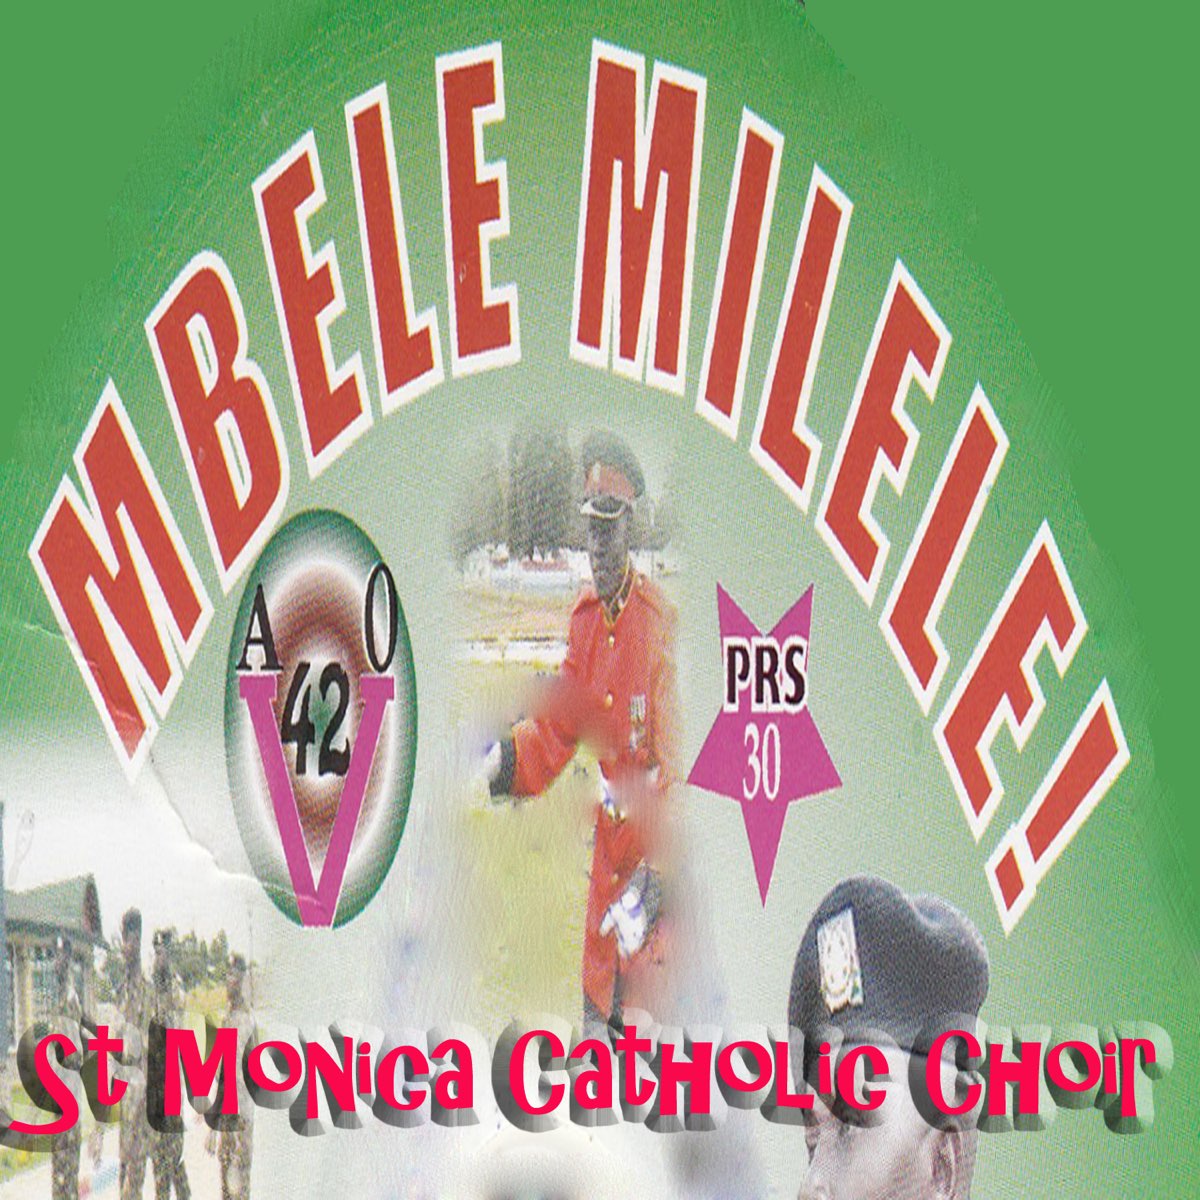 779: Mokele Mbembe — JC